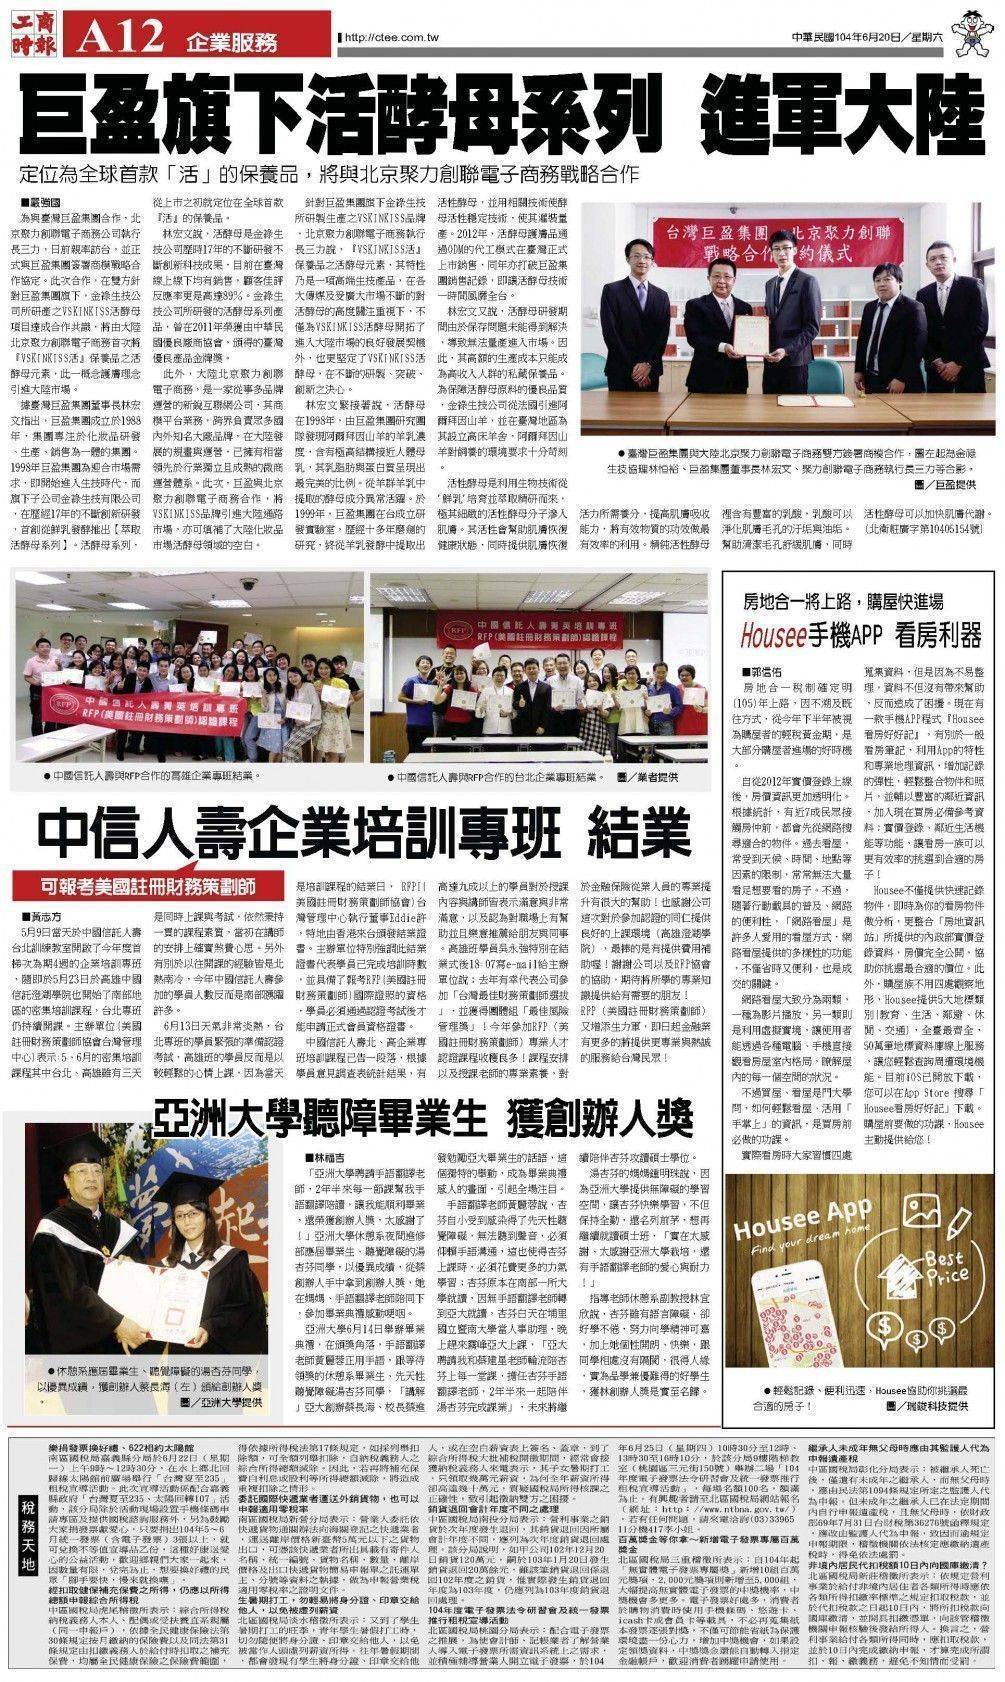 中國信託人壽與RFP合作企業專班結業! 將提供更專業與熱誠的服務給台灣民眾! 